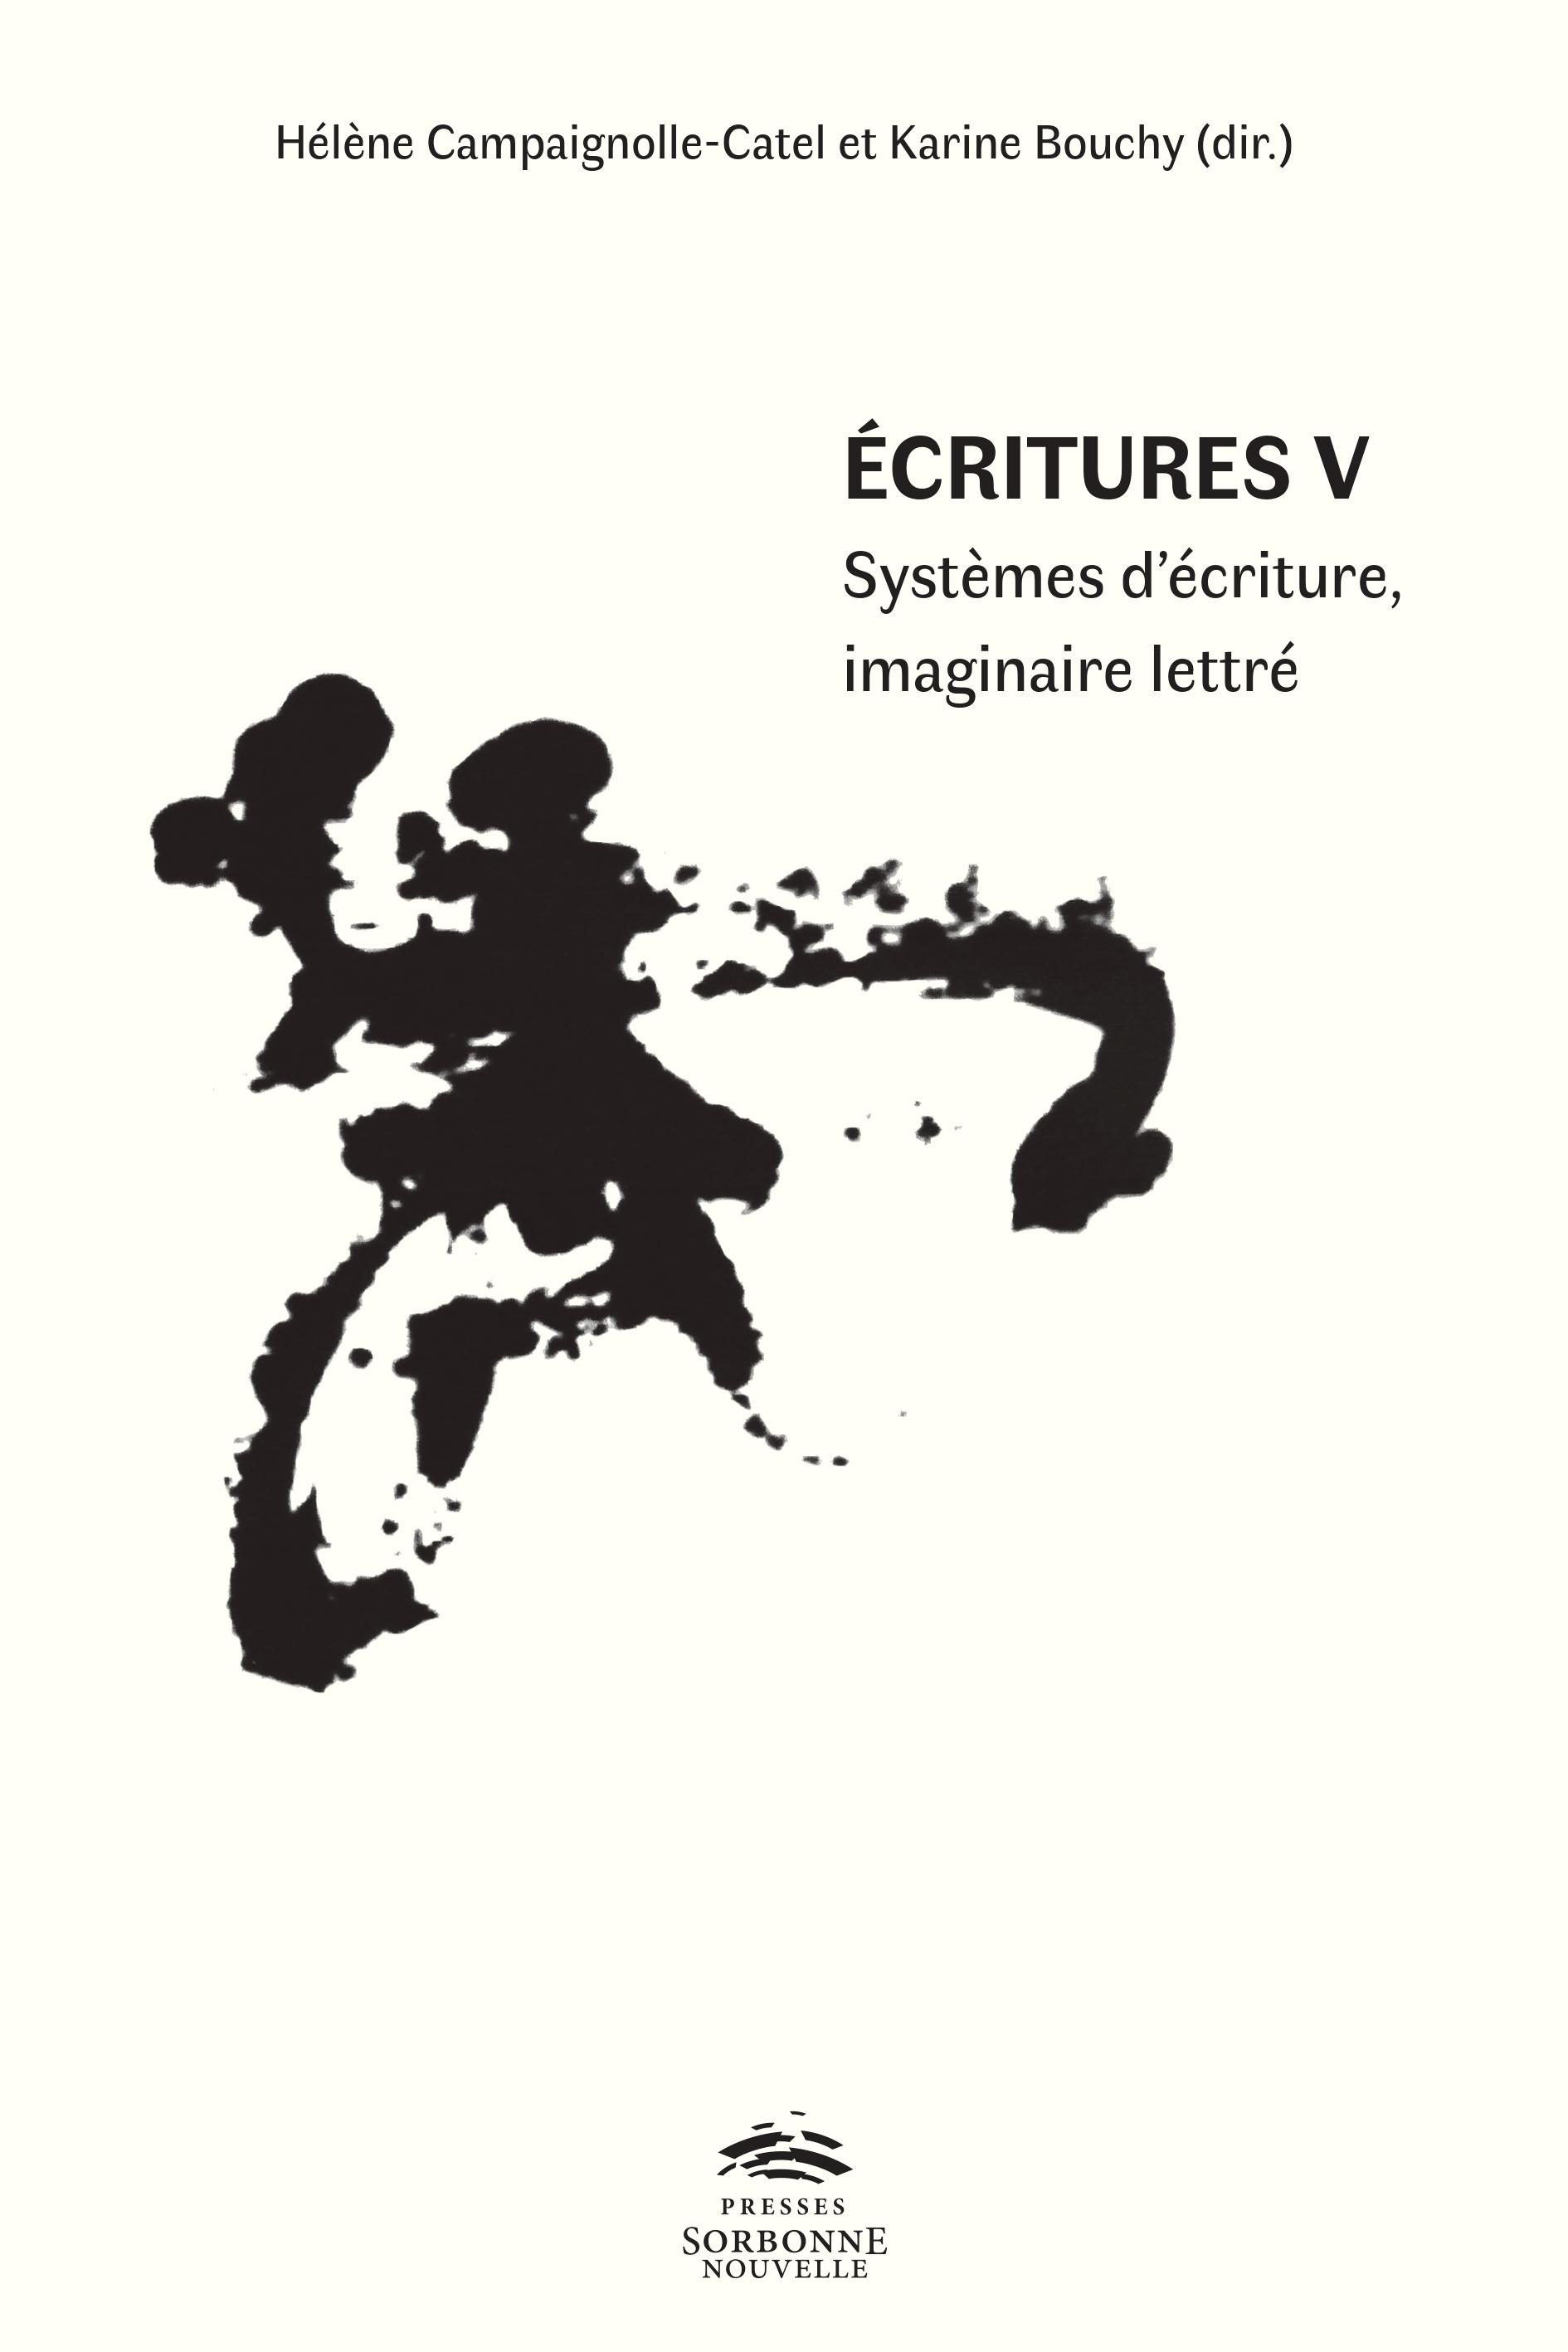 K. Bouchy et H. Campaignolle-Catel (dir.), Écritures V. Systèmes d’écriture, imaginaire lettré